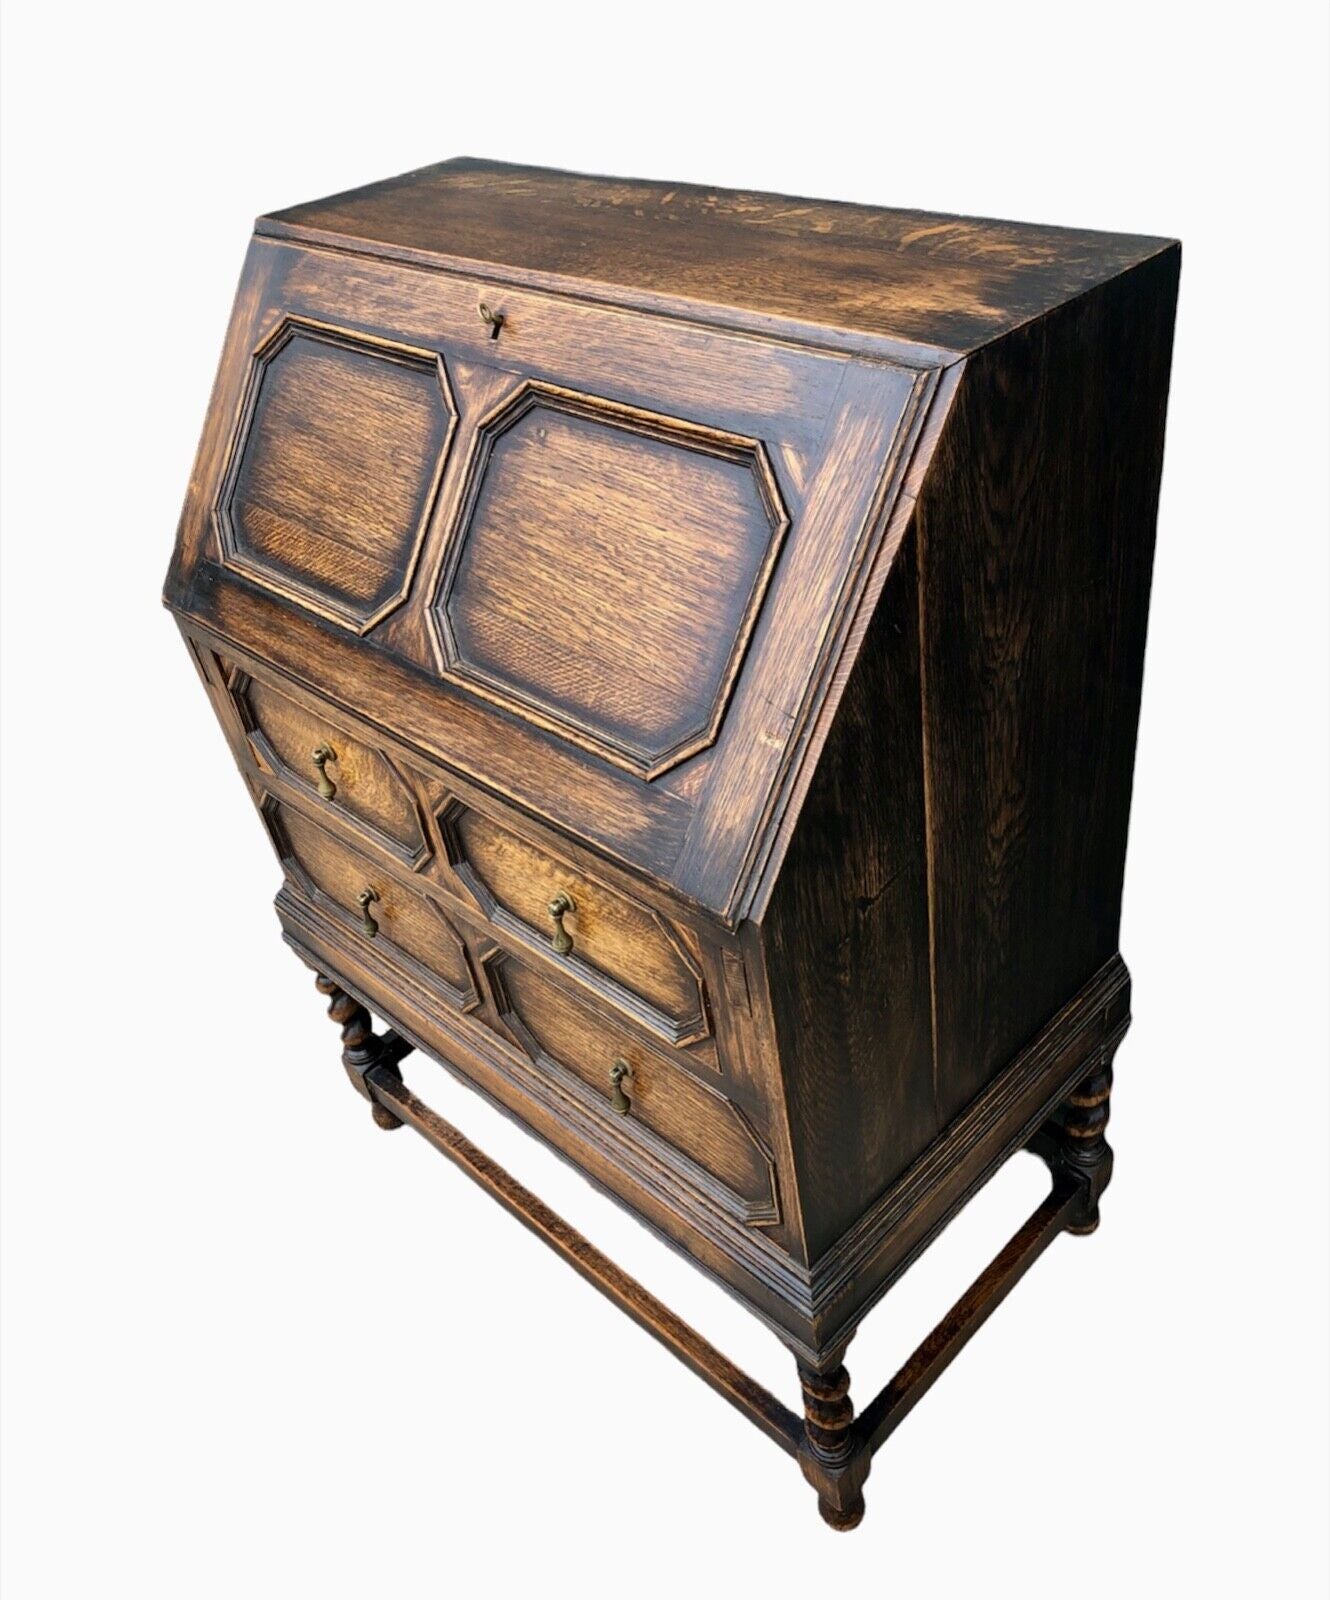 000935....Handsome Vintage Oak Bureau / Desk ( sold )